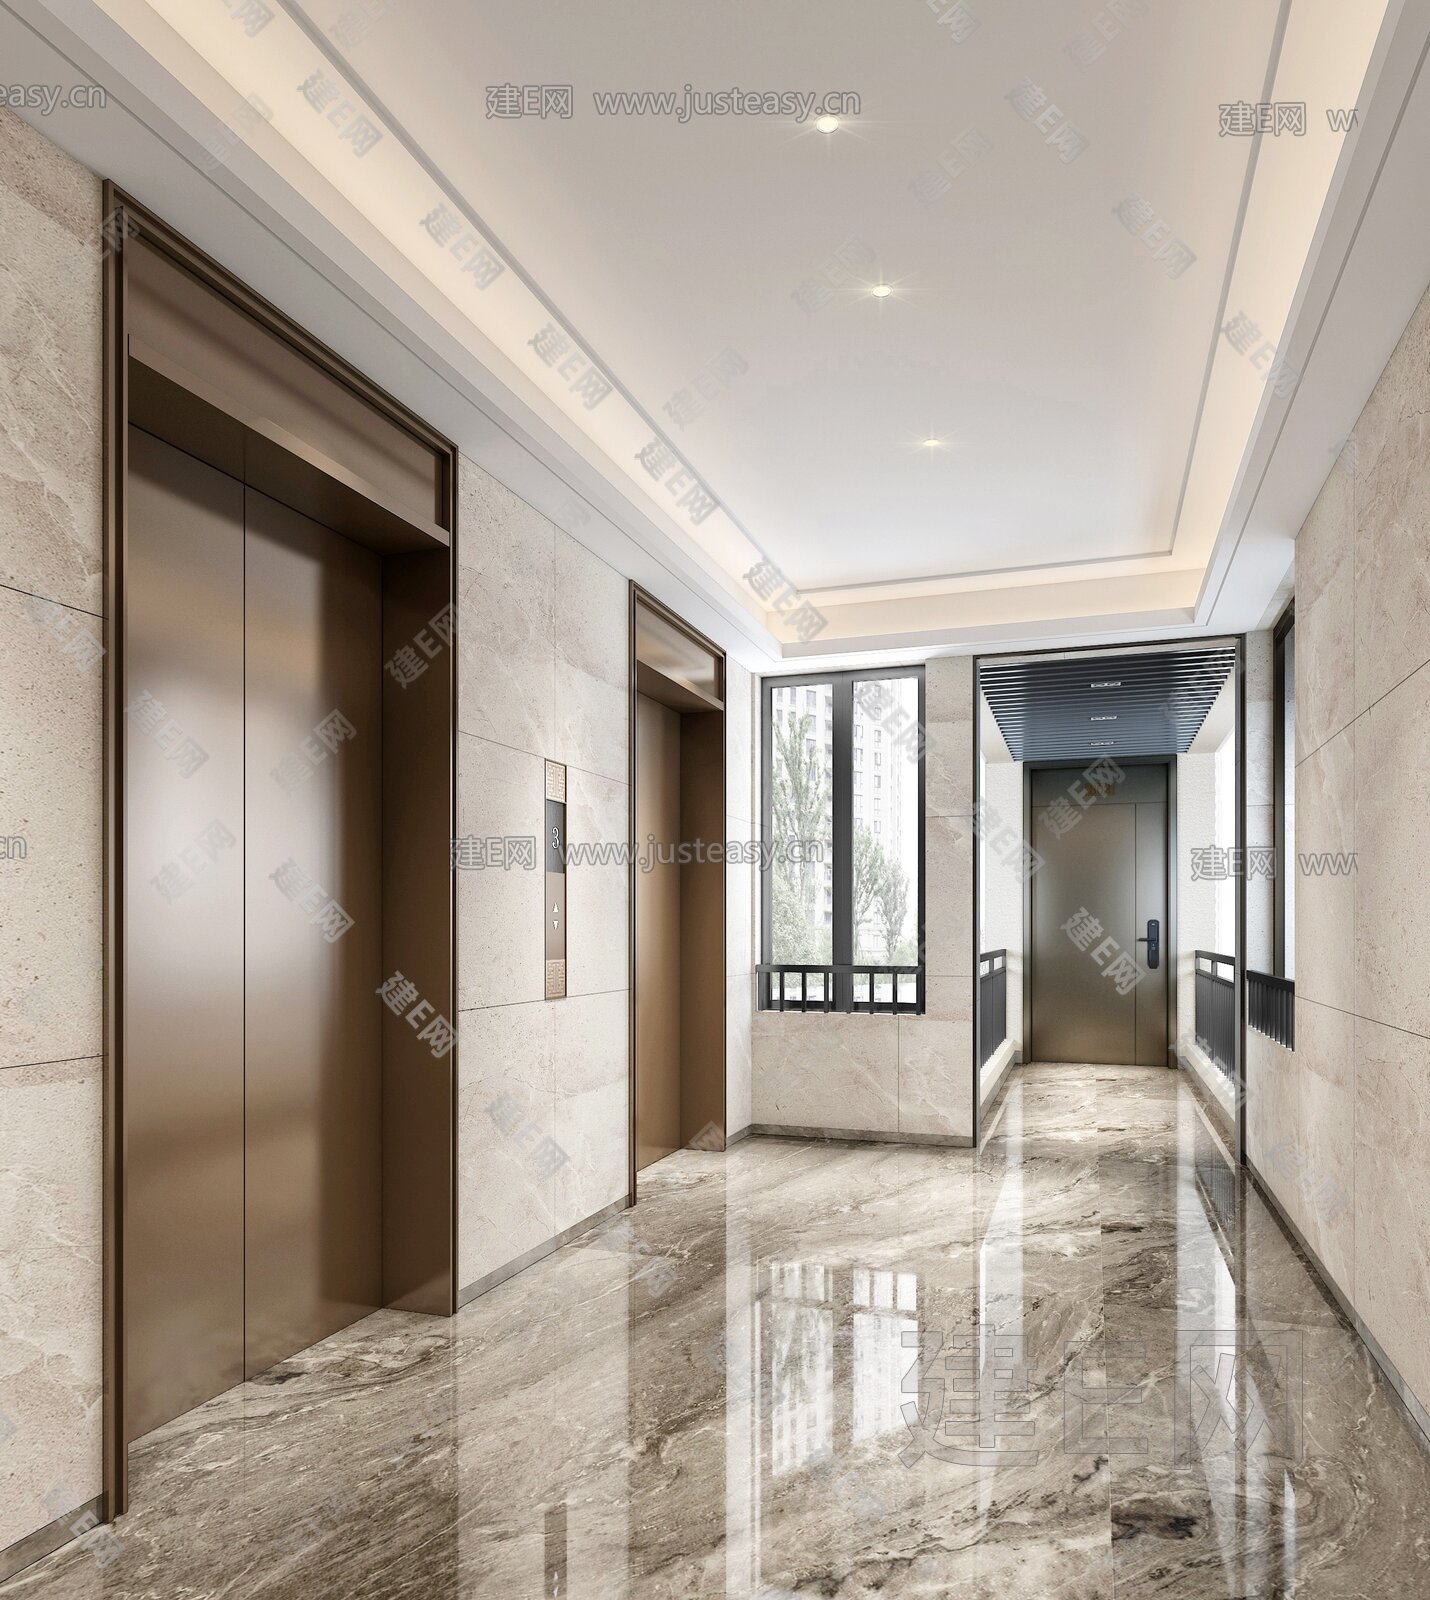 a-5办公楼电梯间走廊玻璃门3d模型下载-【集简空间】「每日更新」